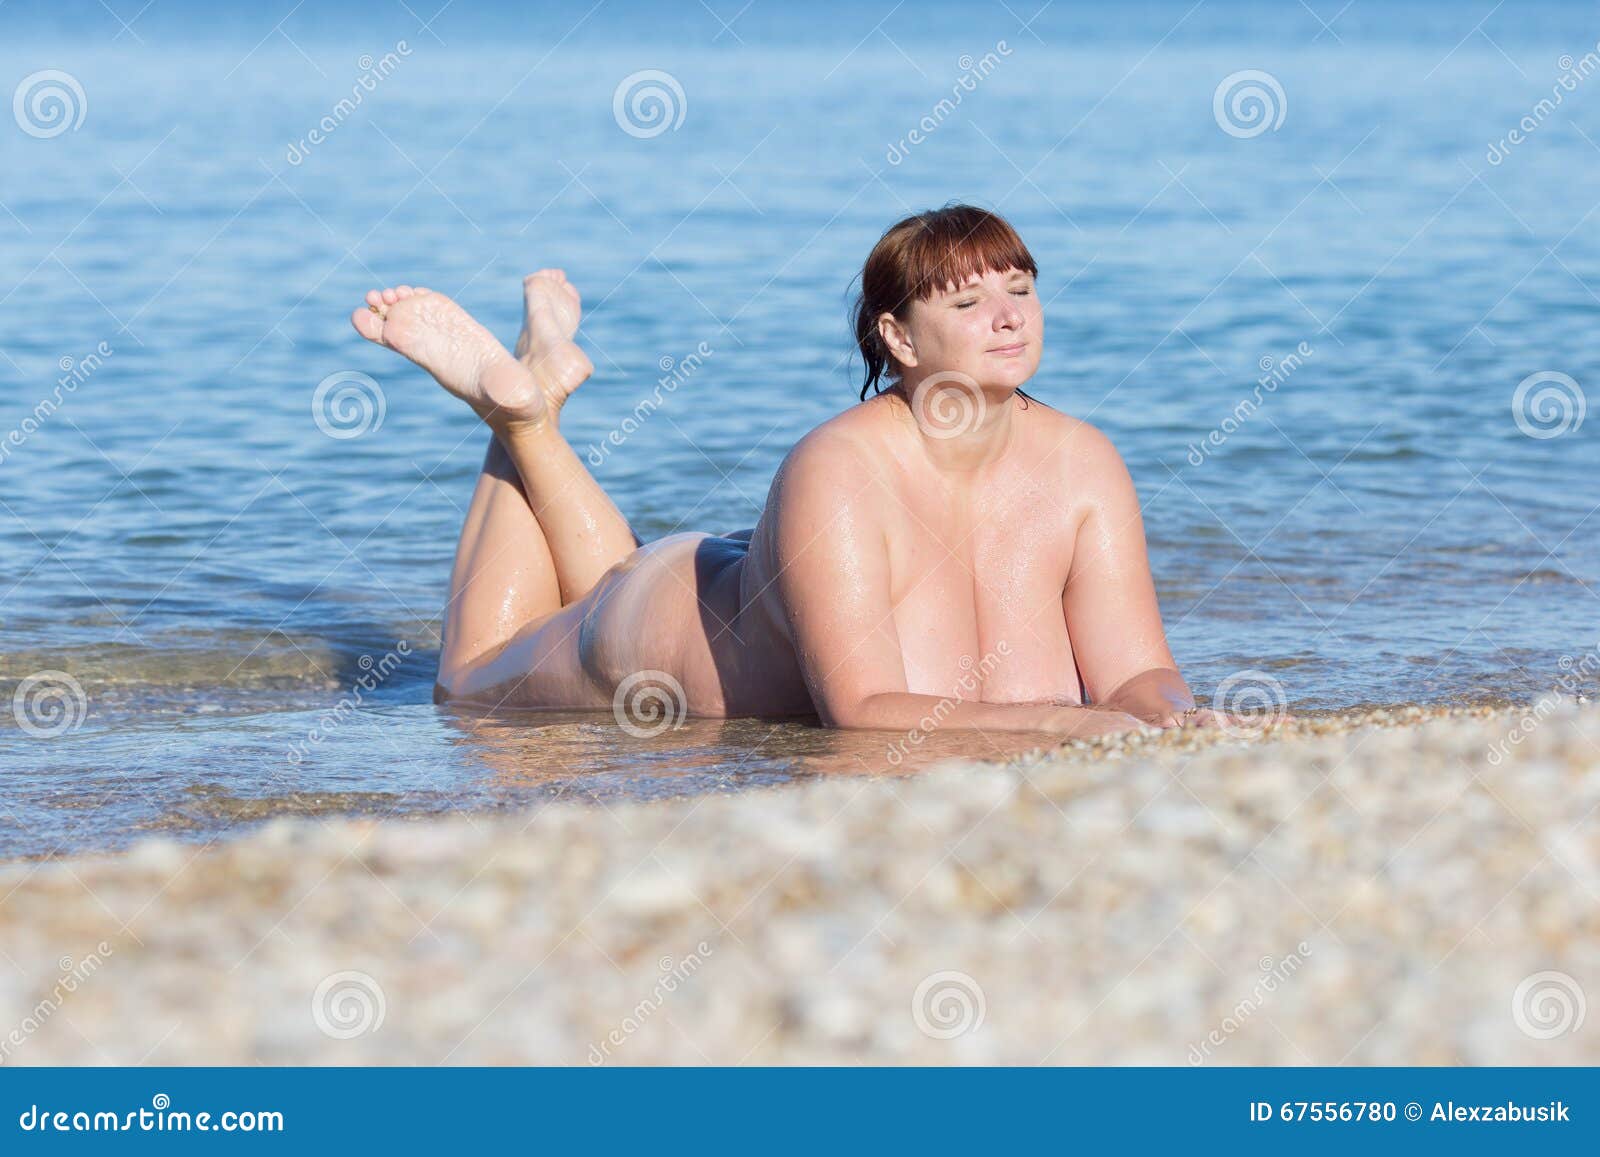 рассказы голая мама на пляже фото 48